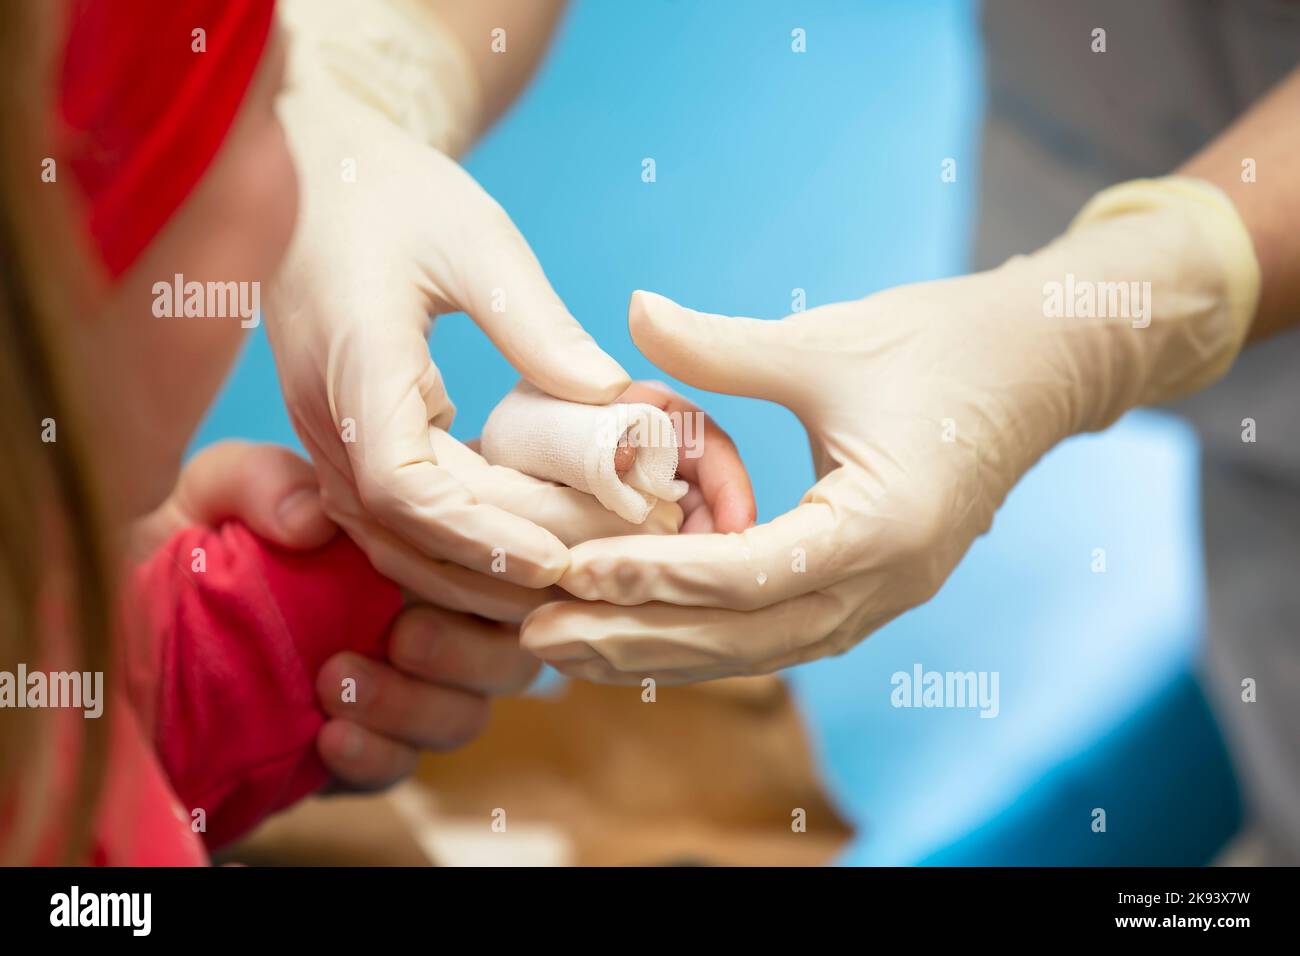 Le mani del medico bendano il dito dolente con un bendaggio del bambino. Lesioni e ferite al dito nei bambini Foto Stock